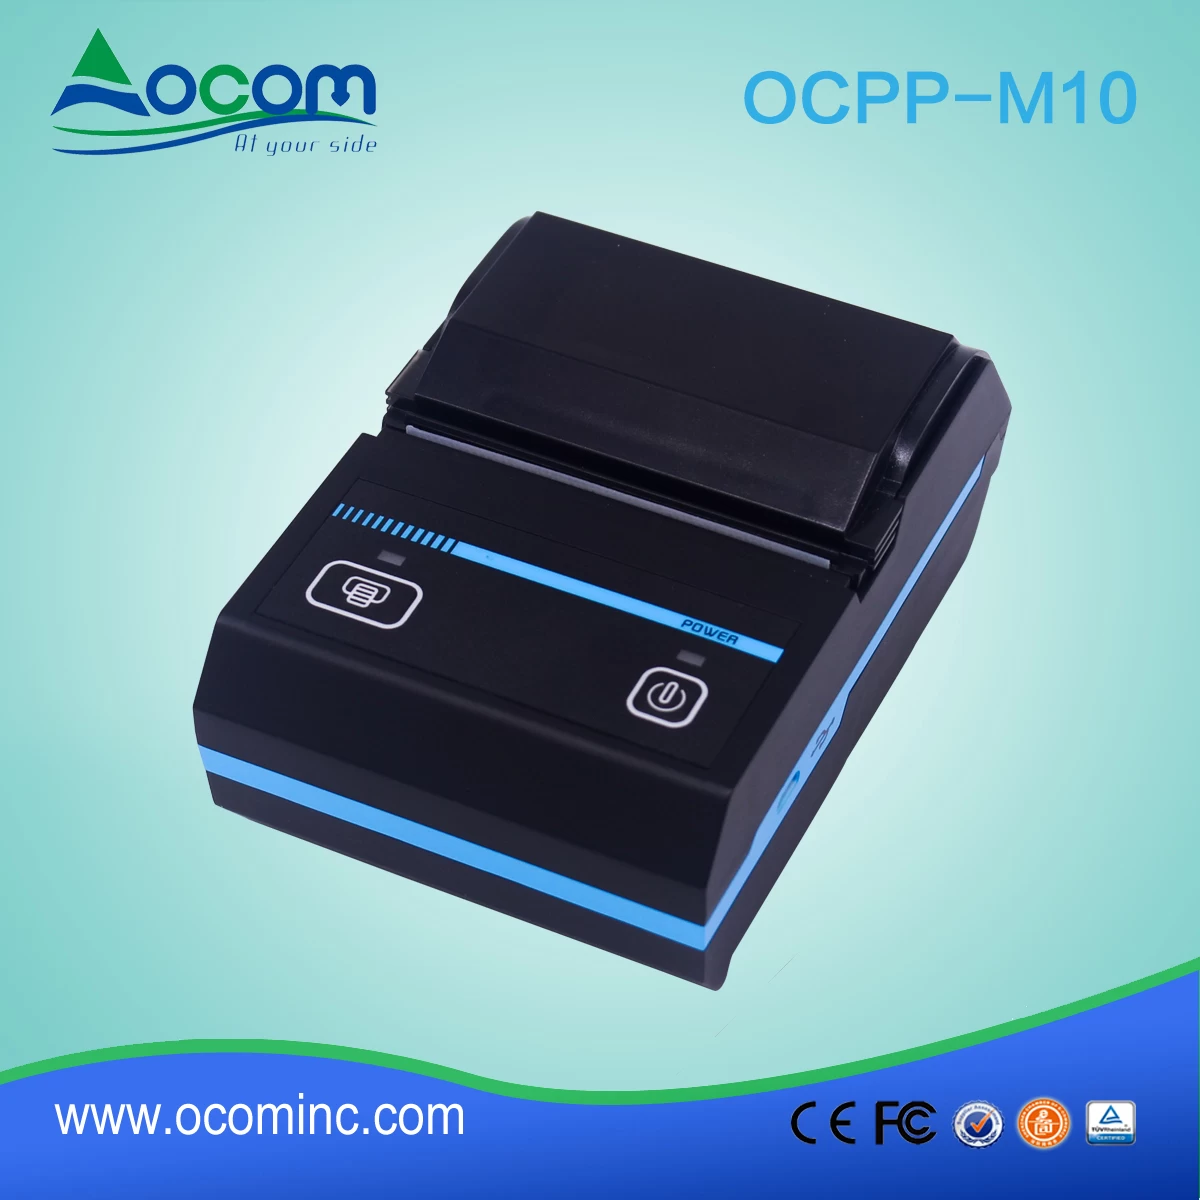 OCPP-M07 nouvelle pos réception bluetooth mini imprimante thermique bill